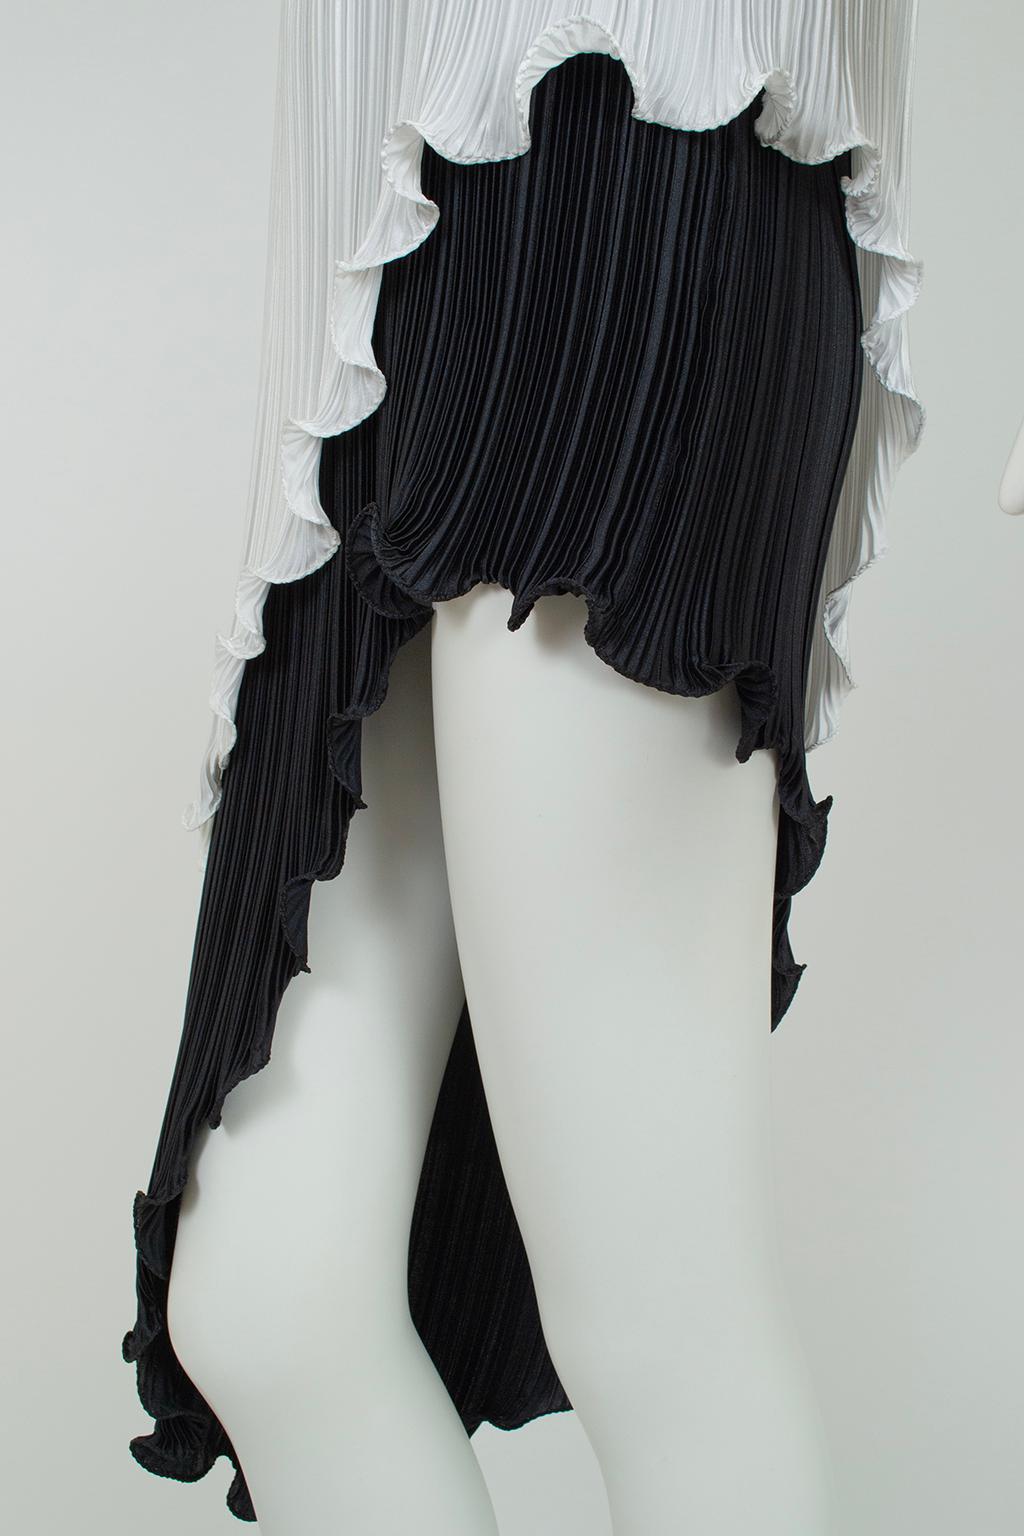 New Tarquin Ebker Black White Asymmetrical Delphos Dress w Provenance – S, 1978 For Sale 8